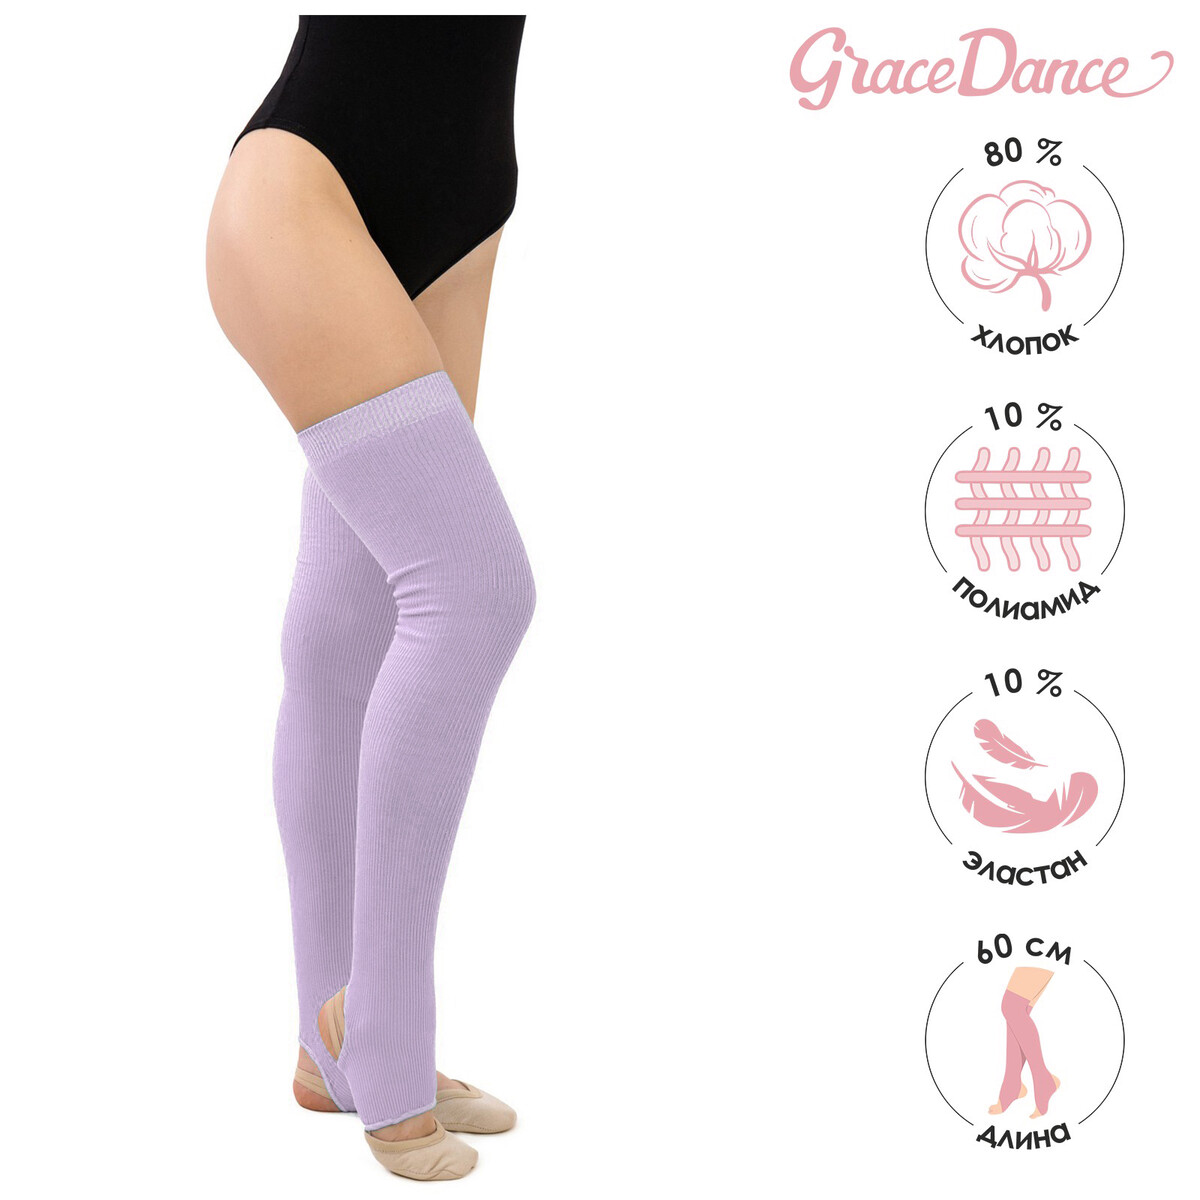 Гетры для танцев grace dance №5, длина 60 см, цвет сиреневый Grace Dance